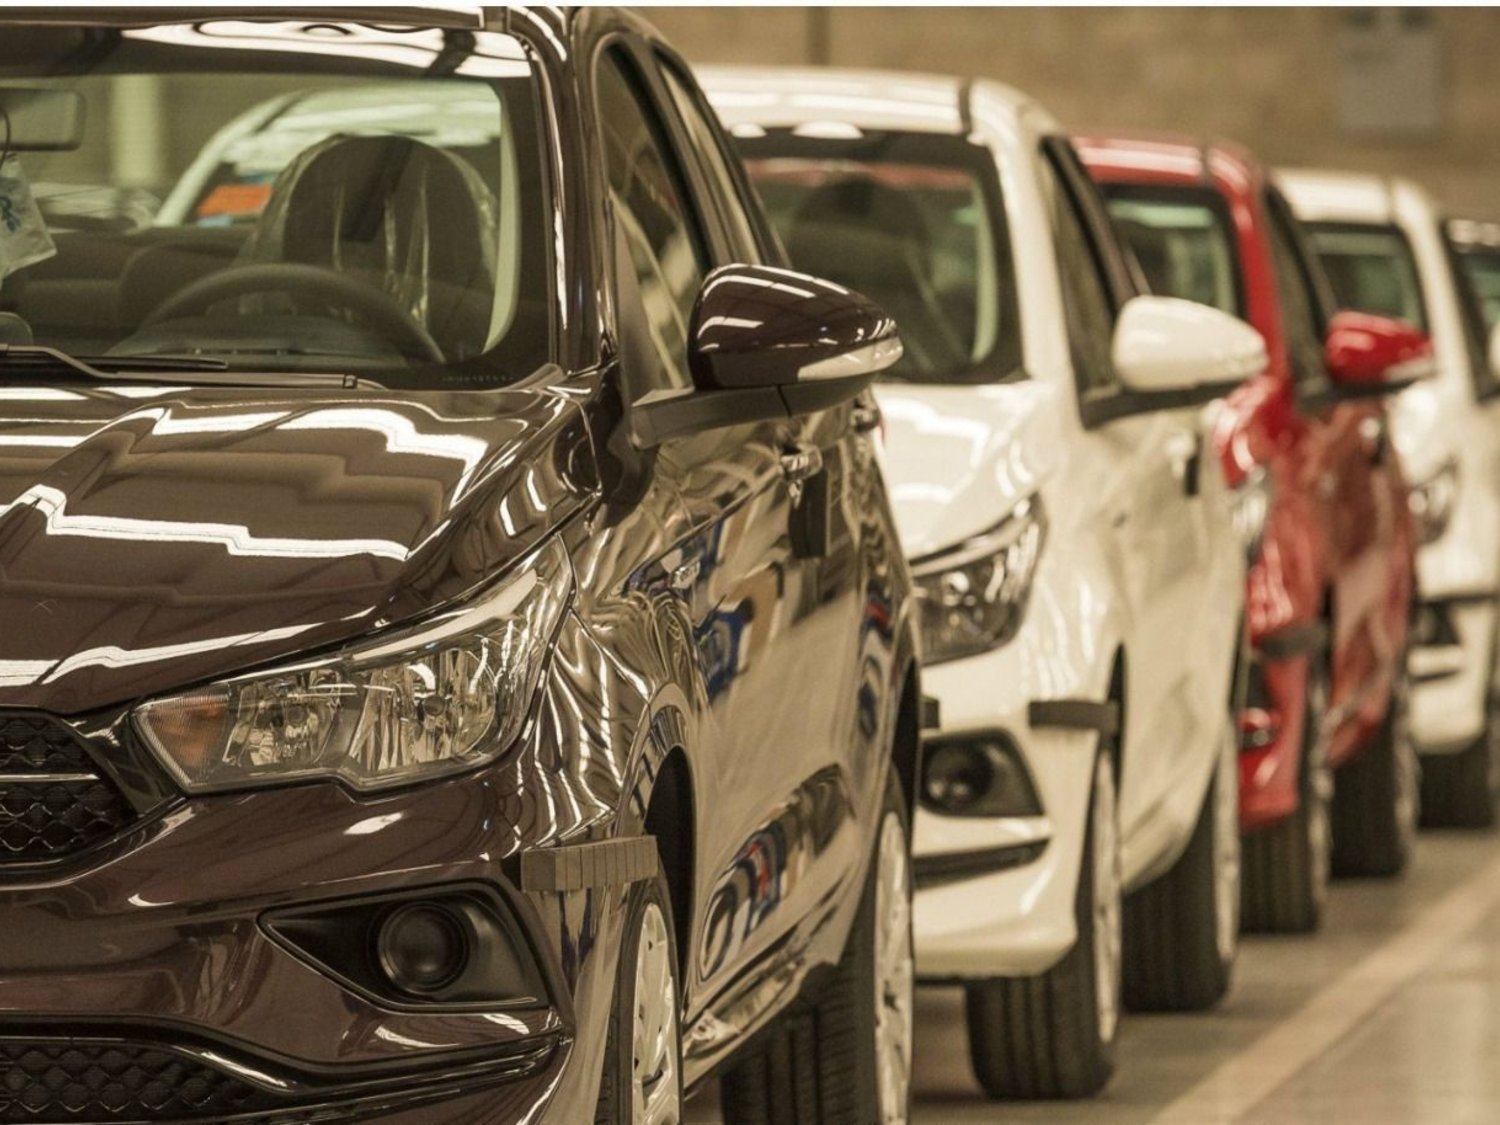 Se derrumba la venta de autos 0KM: caída de 36% en marzo y 30% en el trimestre